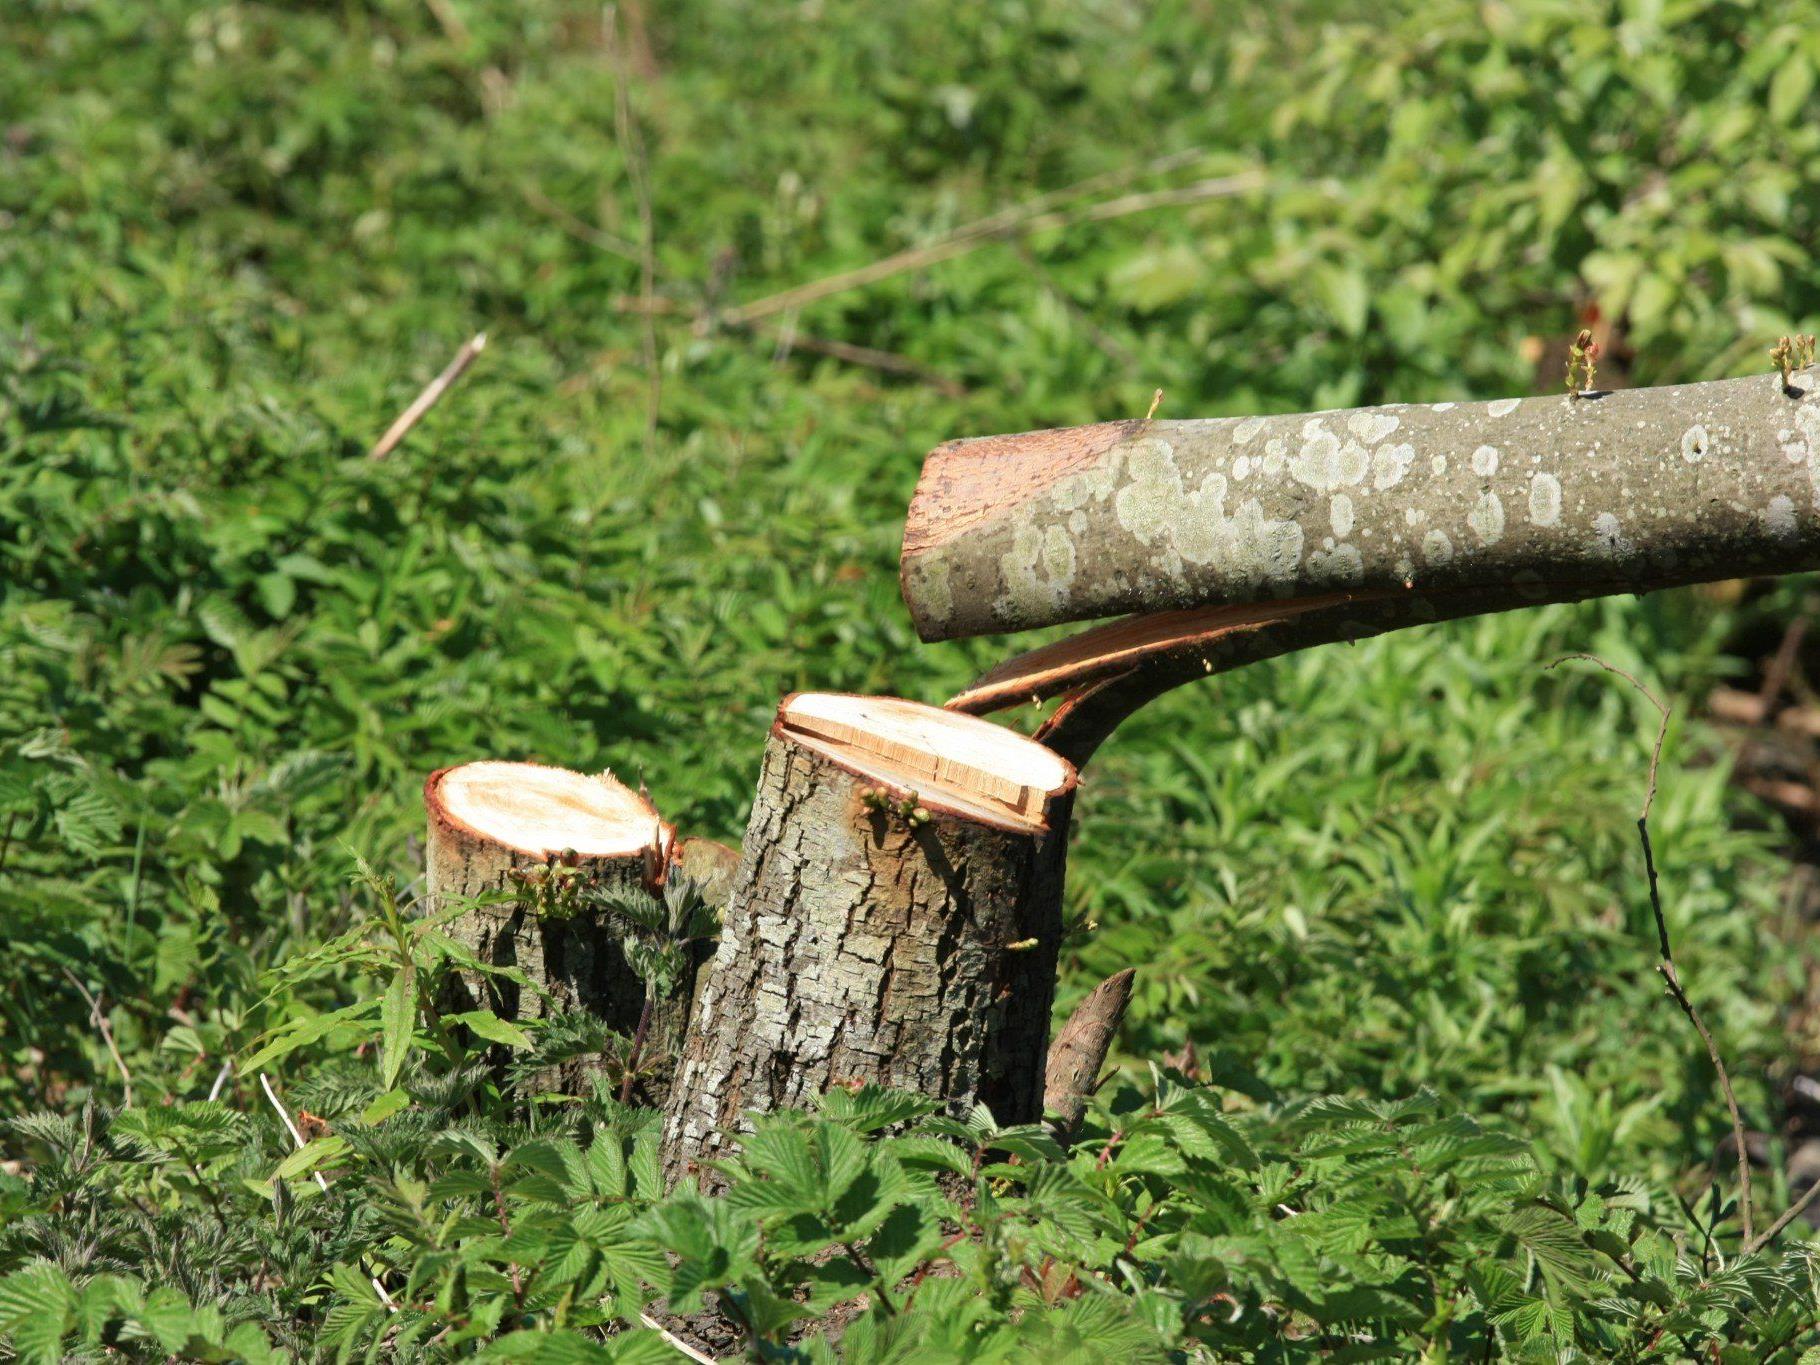 40-Jähriger bei Forstarbeiten im Gütle von Baum getroffen - verletzt.